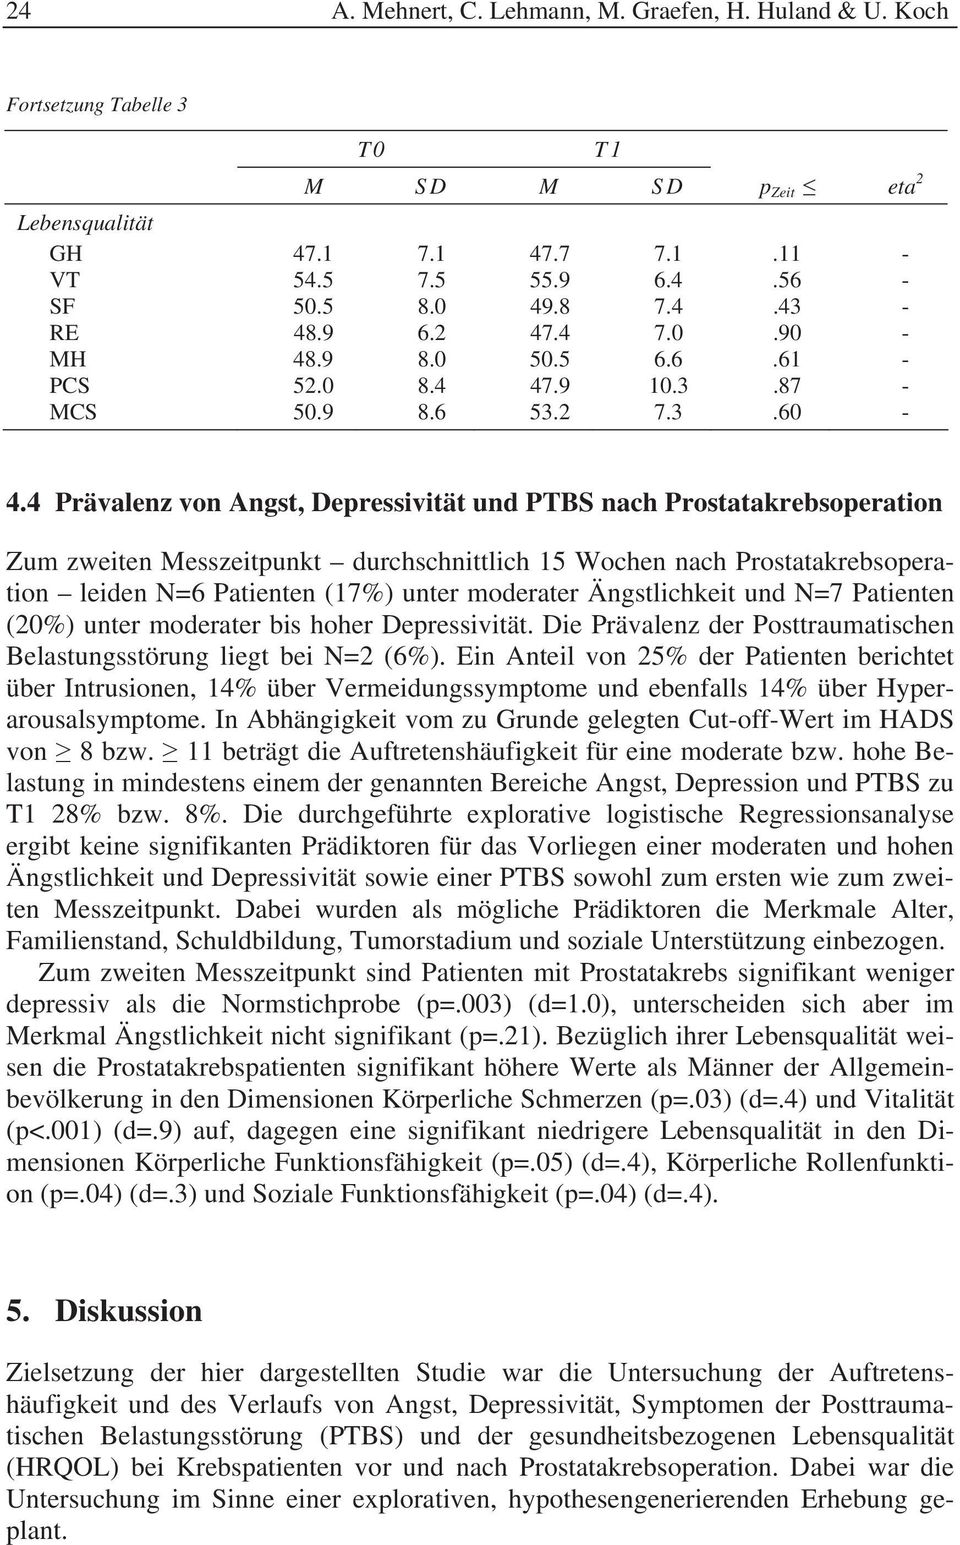 4 Prävalenz von Angst, Depressivität und PTBS nach Prostatakrebsoperation Zum zweiten Messzeitpunkt durchschnittlich 15 Wochen nach Prostatakrebsoperation leiden N=6 Patienten (17%) unter moderater